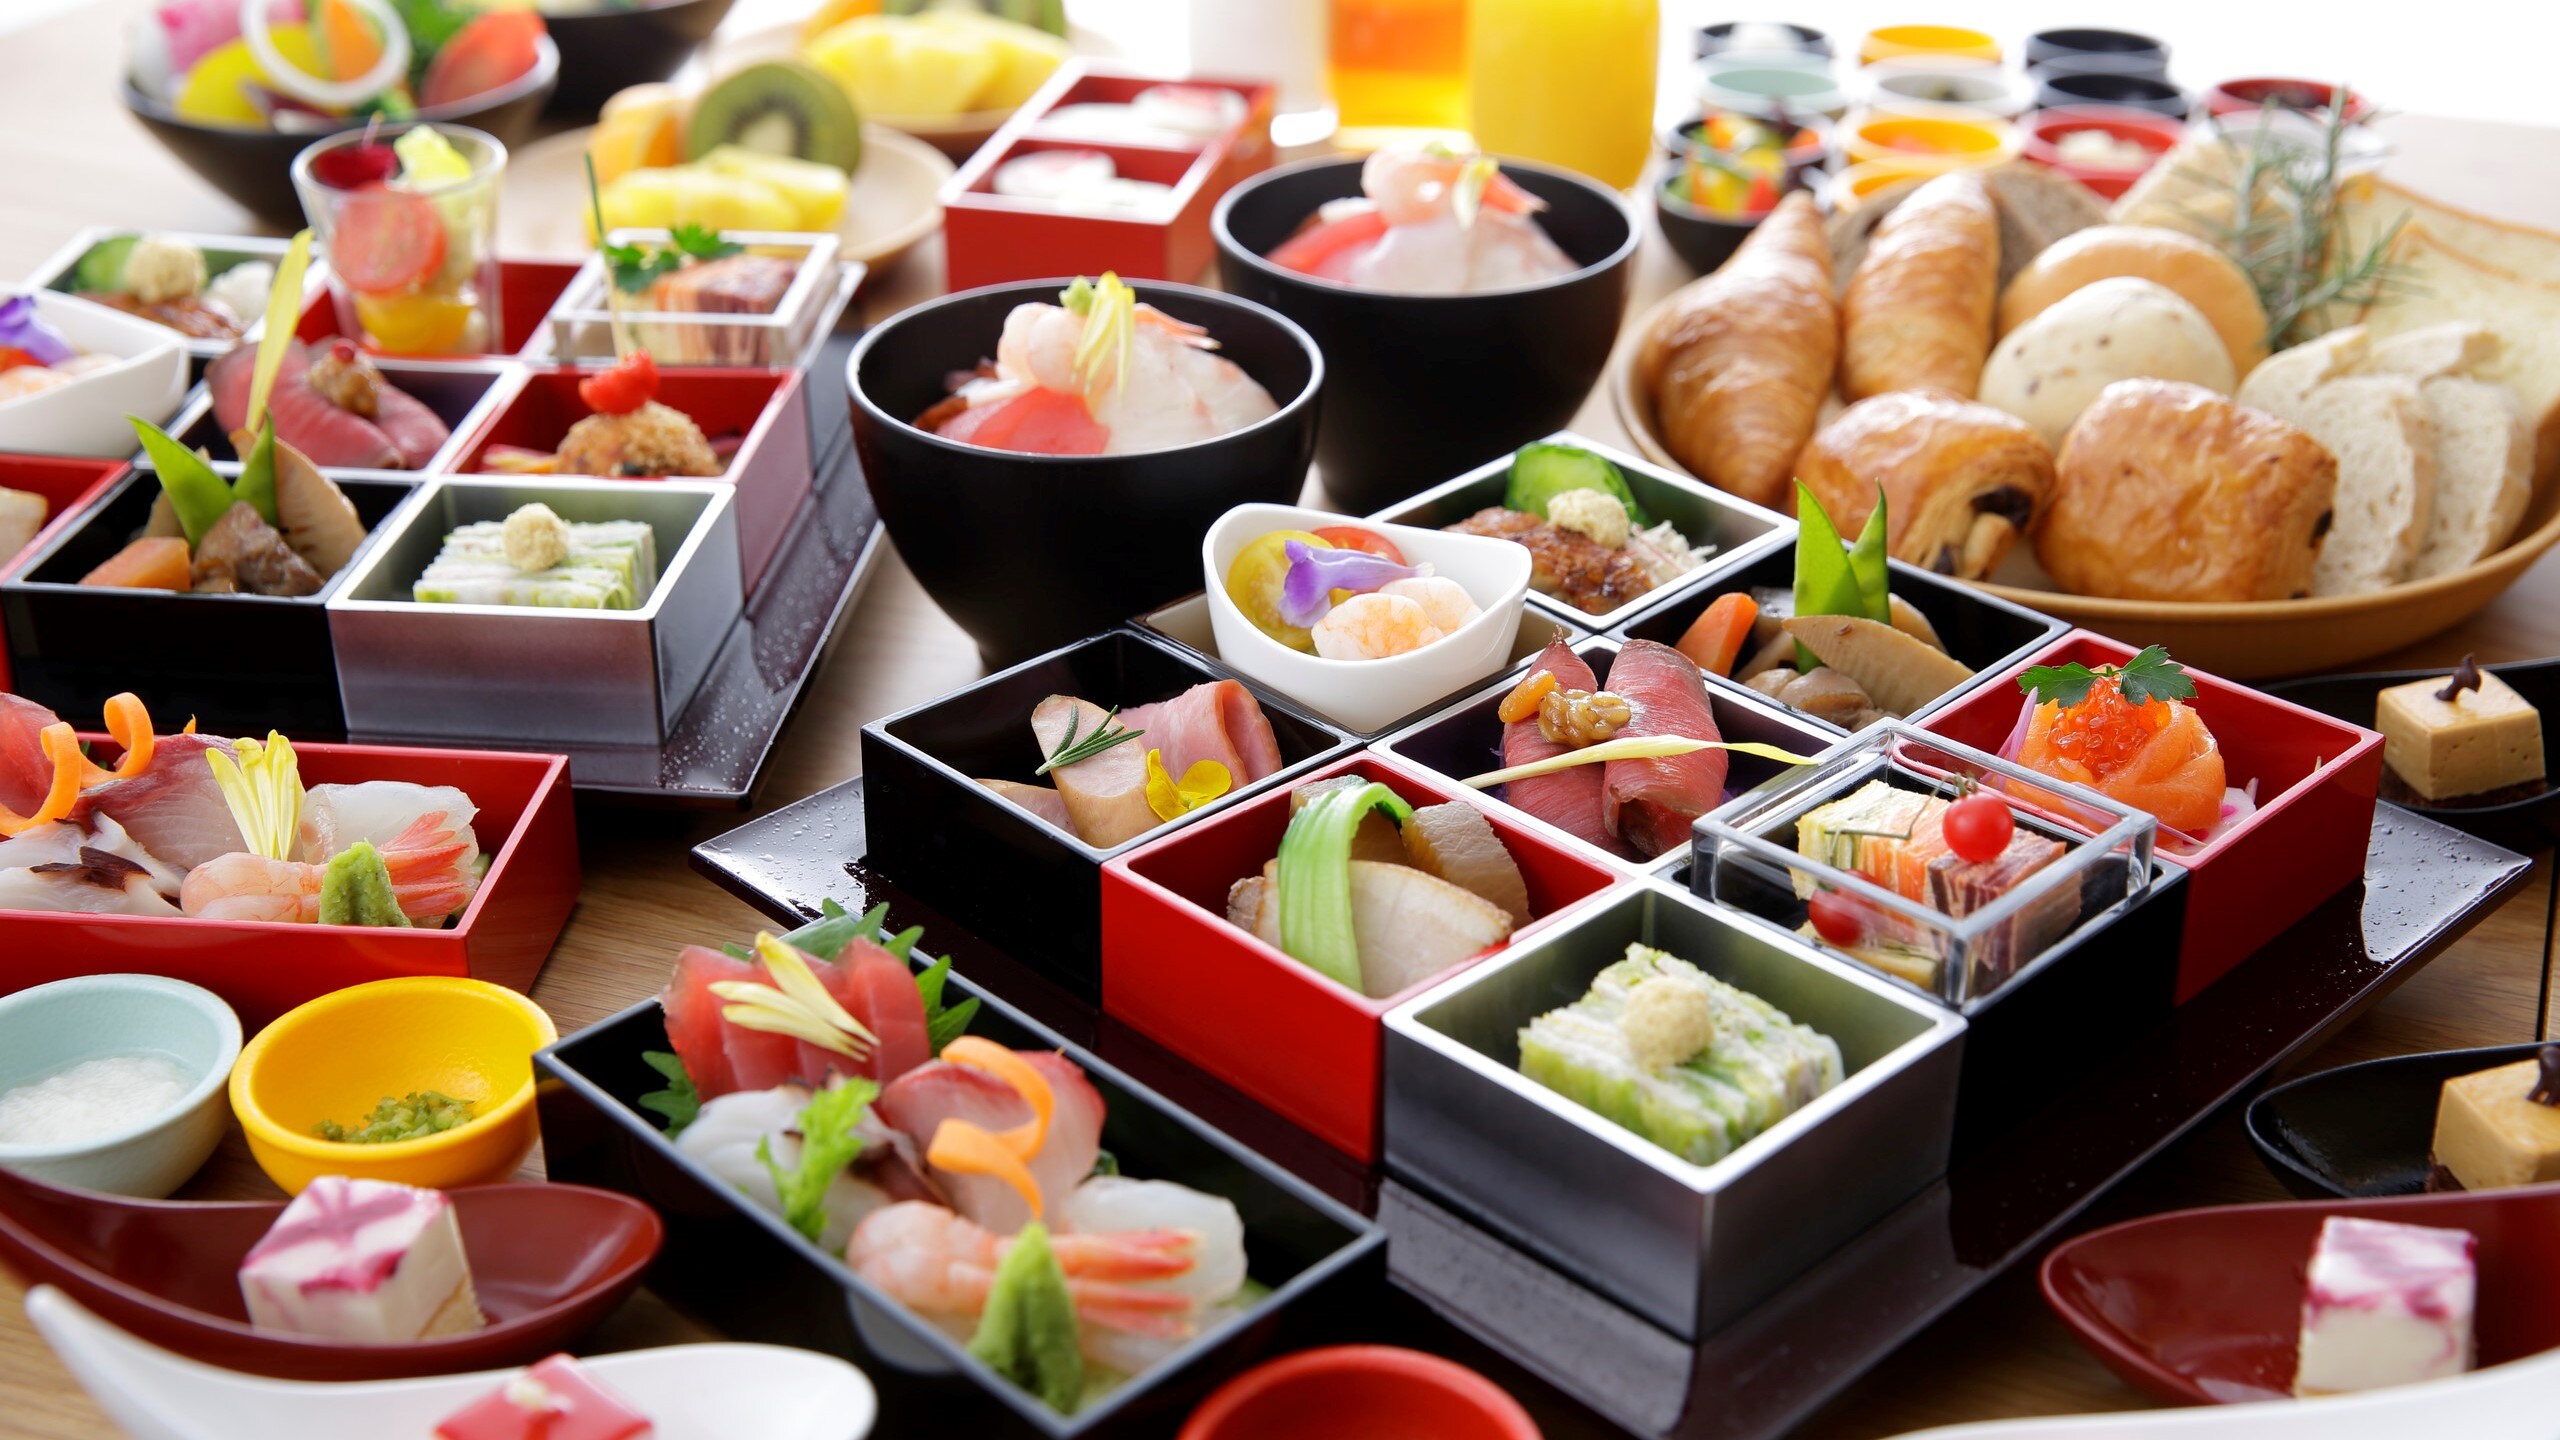 【餐厅“Sora-KU-”早餐】新鲜的蔬菜水果为旅途中的早餐增添色彩。